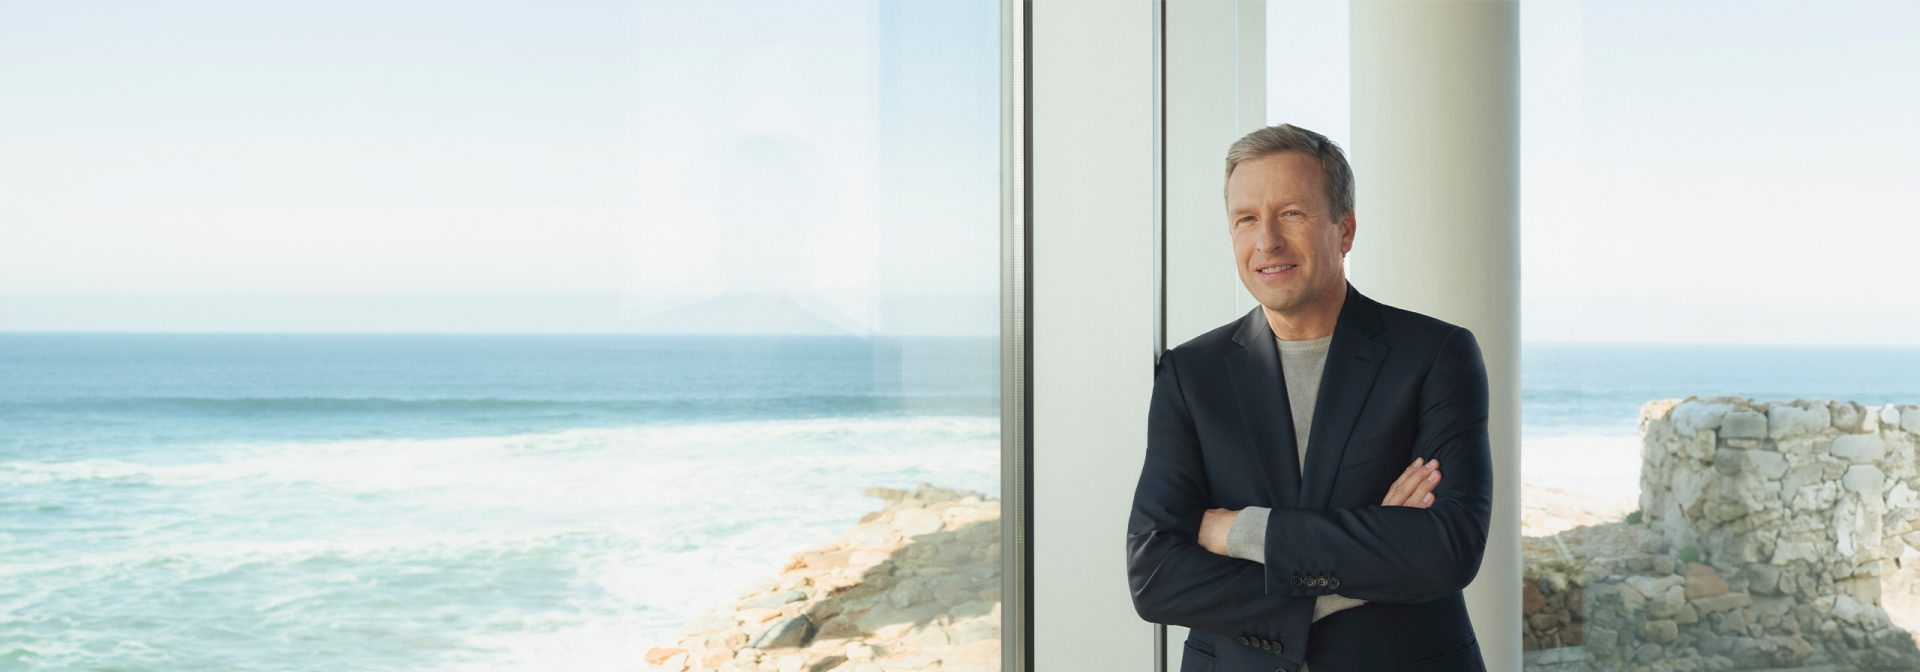 Oliver Zipse, der CEO der BMW AG, mit verschränkten Armen an einer Fensterfront stehend. Das Meer ist im Hintergrund.